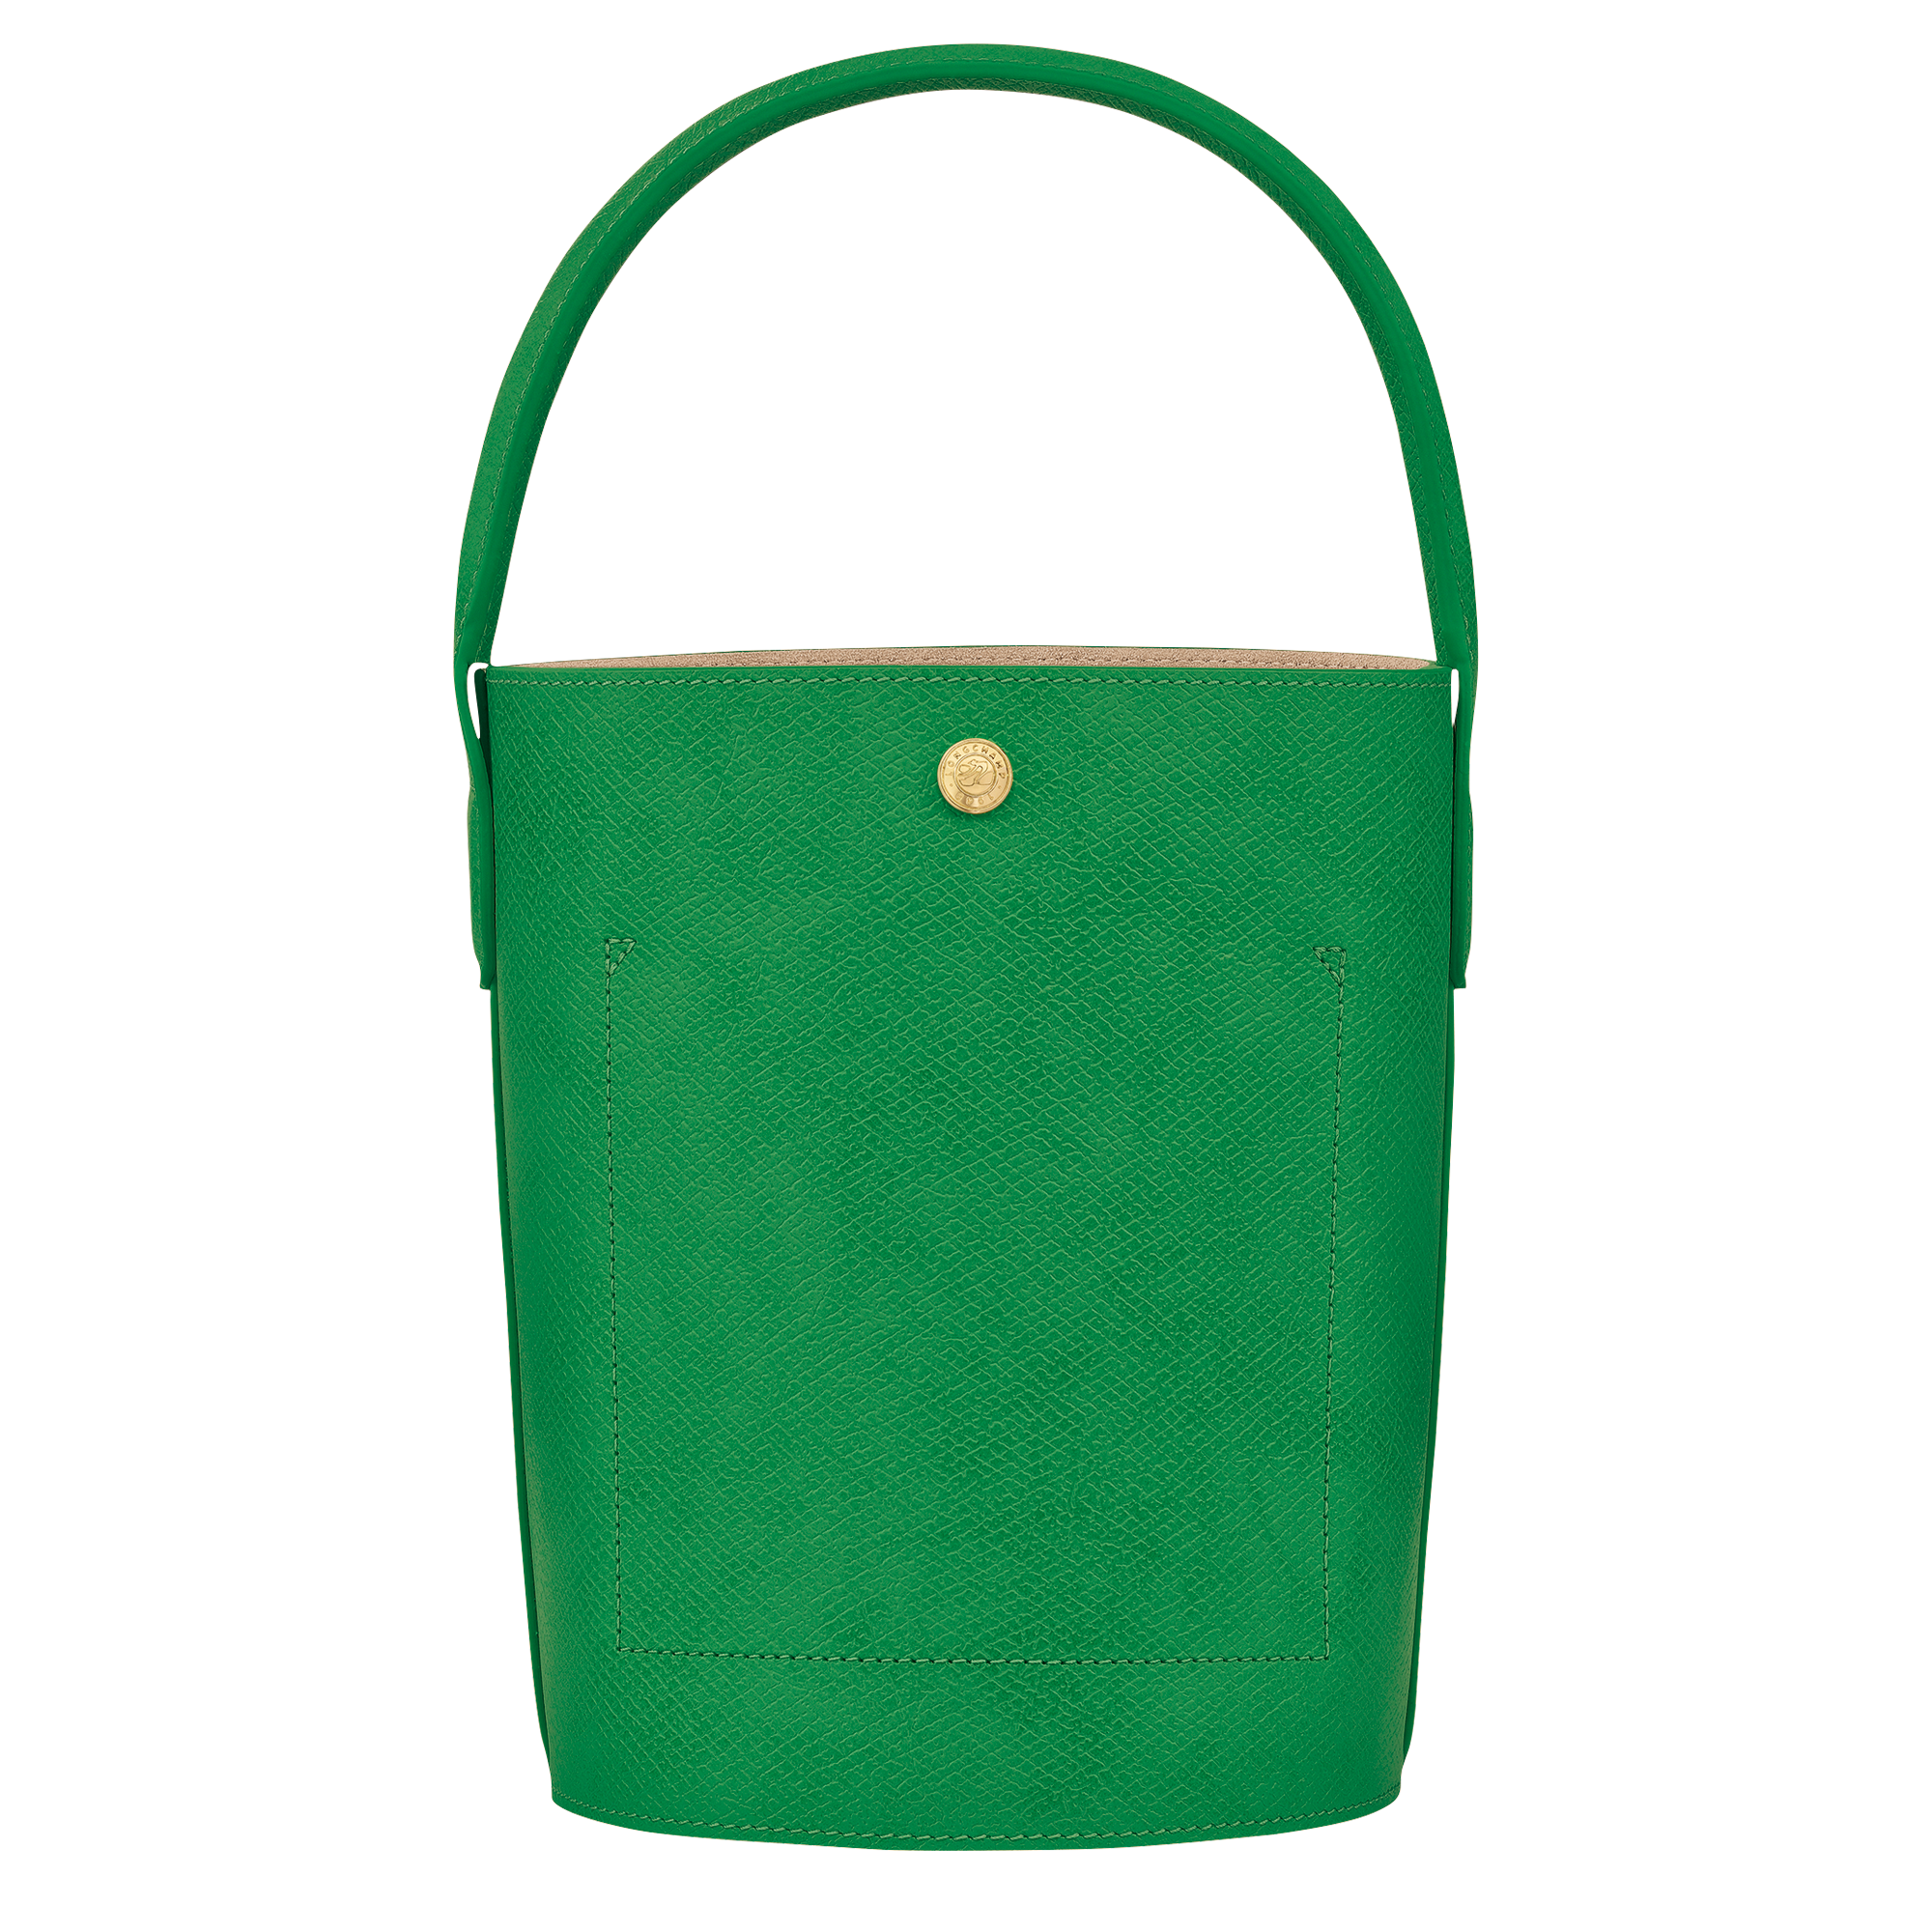 Épure 水桶包S, 绿色